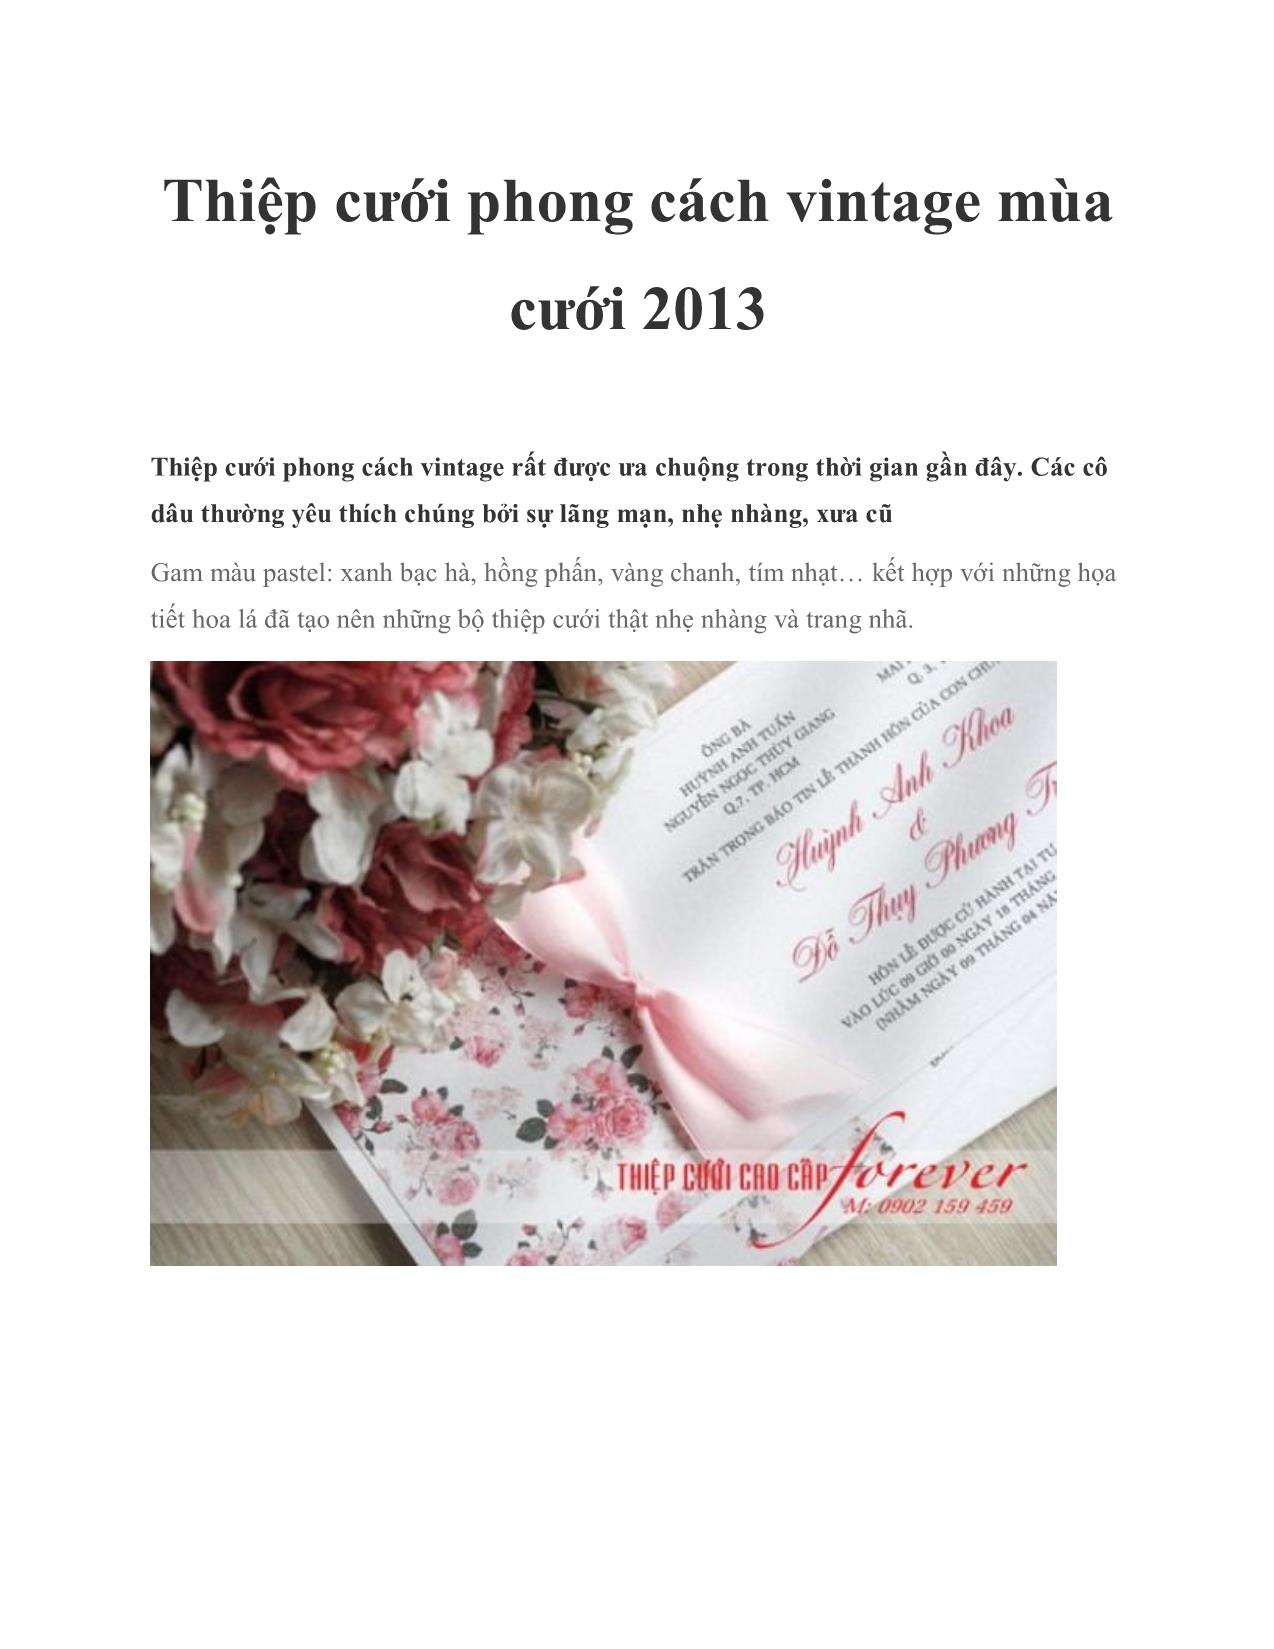 Thiệp cưới phong cách vintage mùa cưới 2013 trang 1